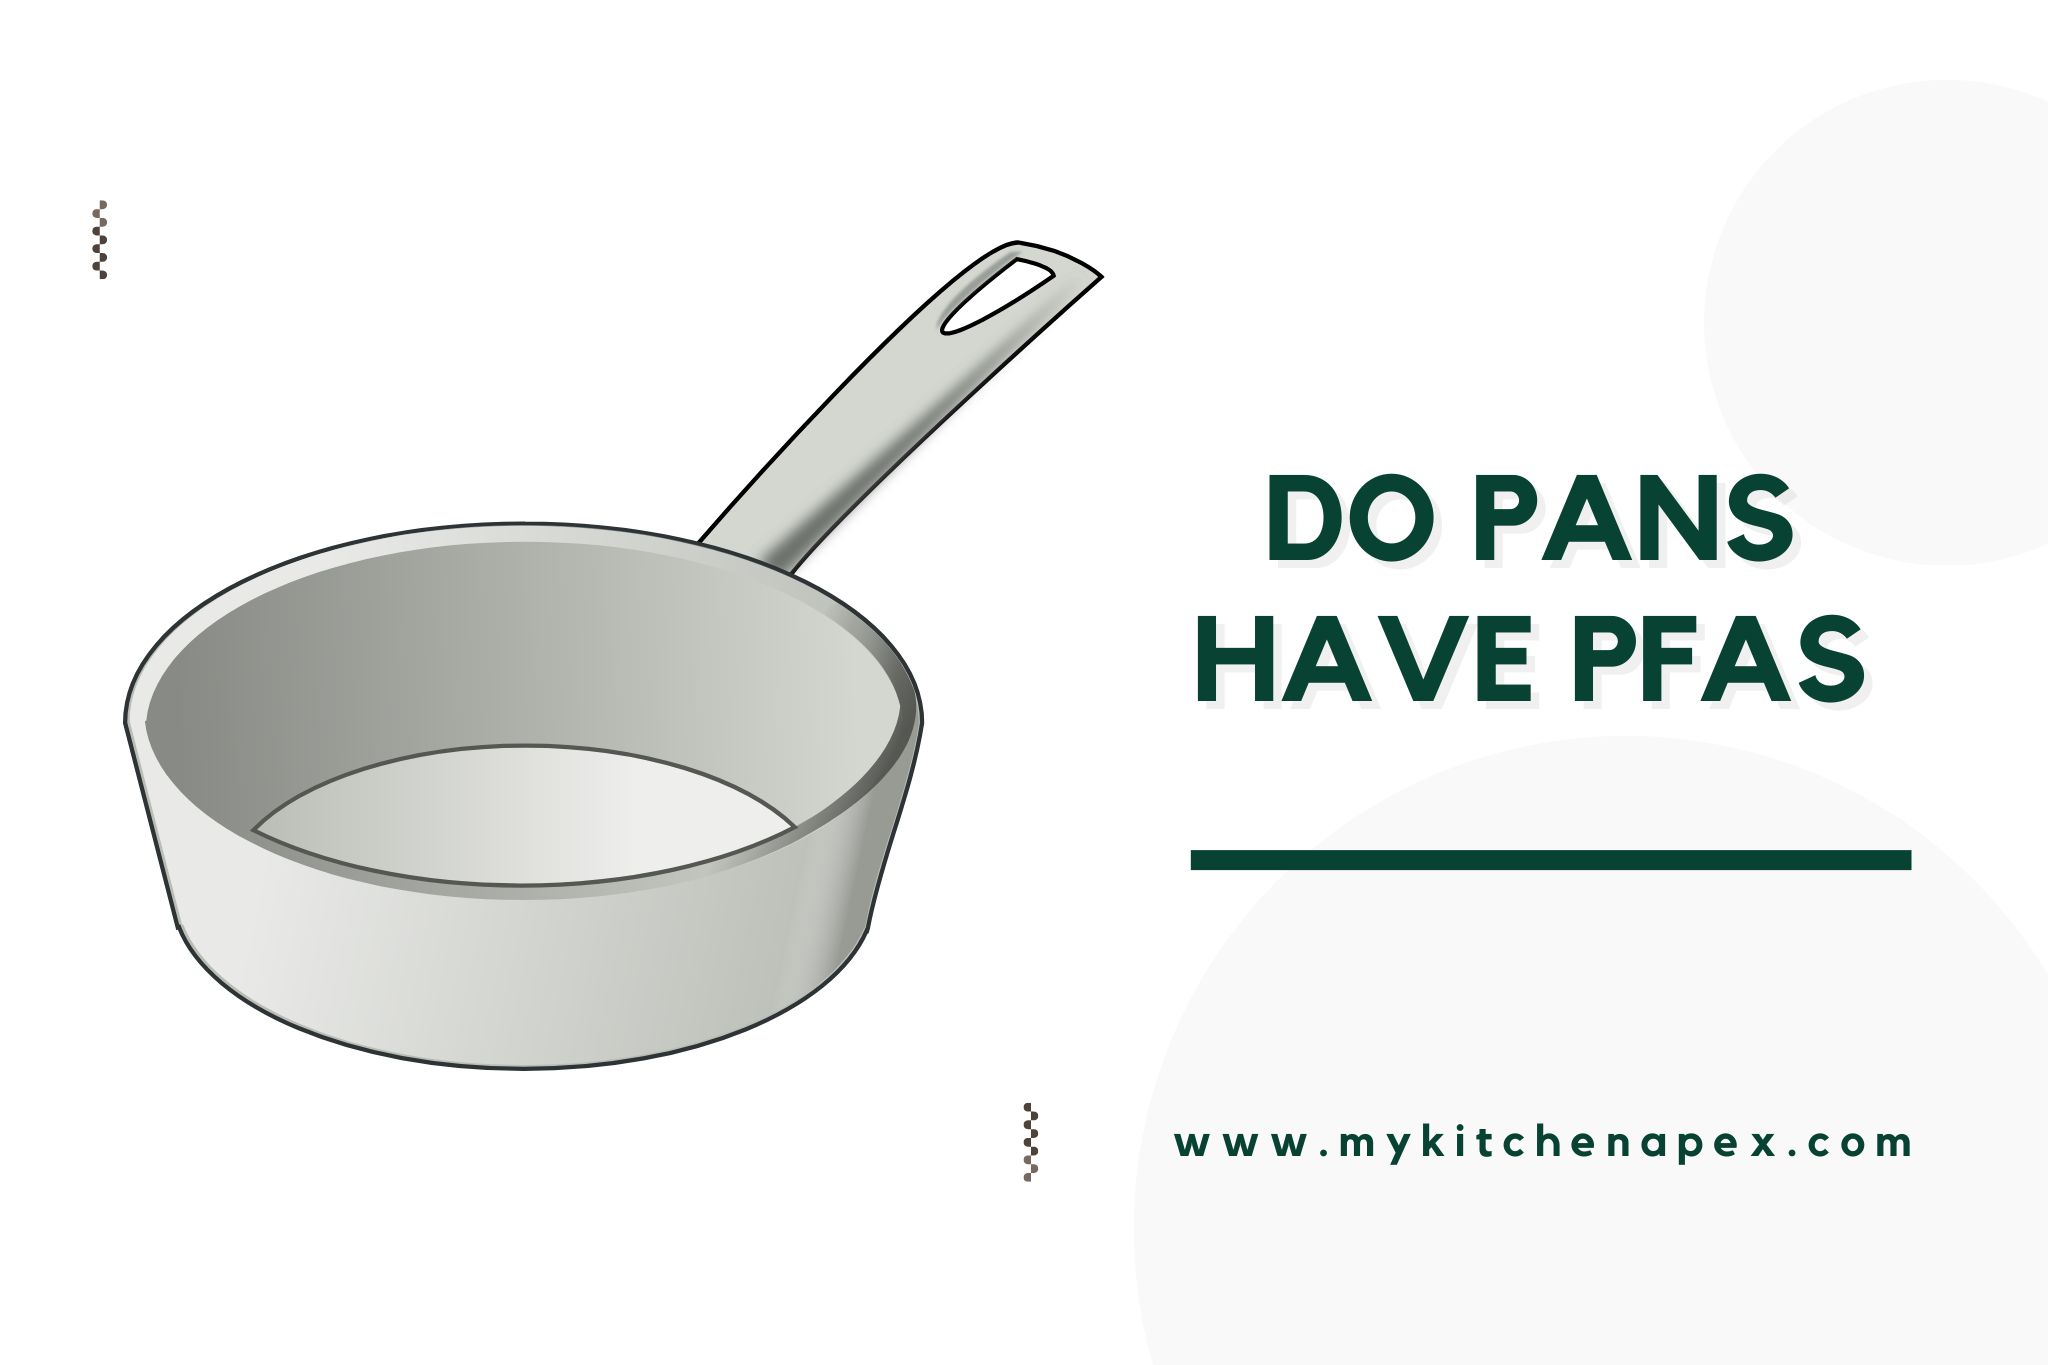 do pans have pfas